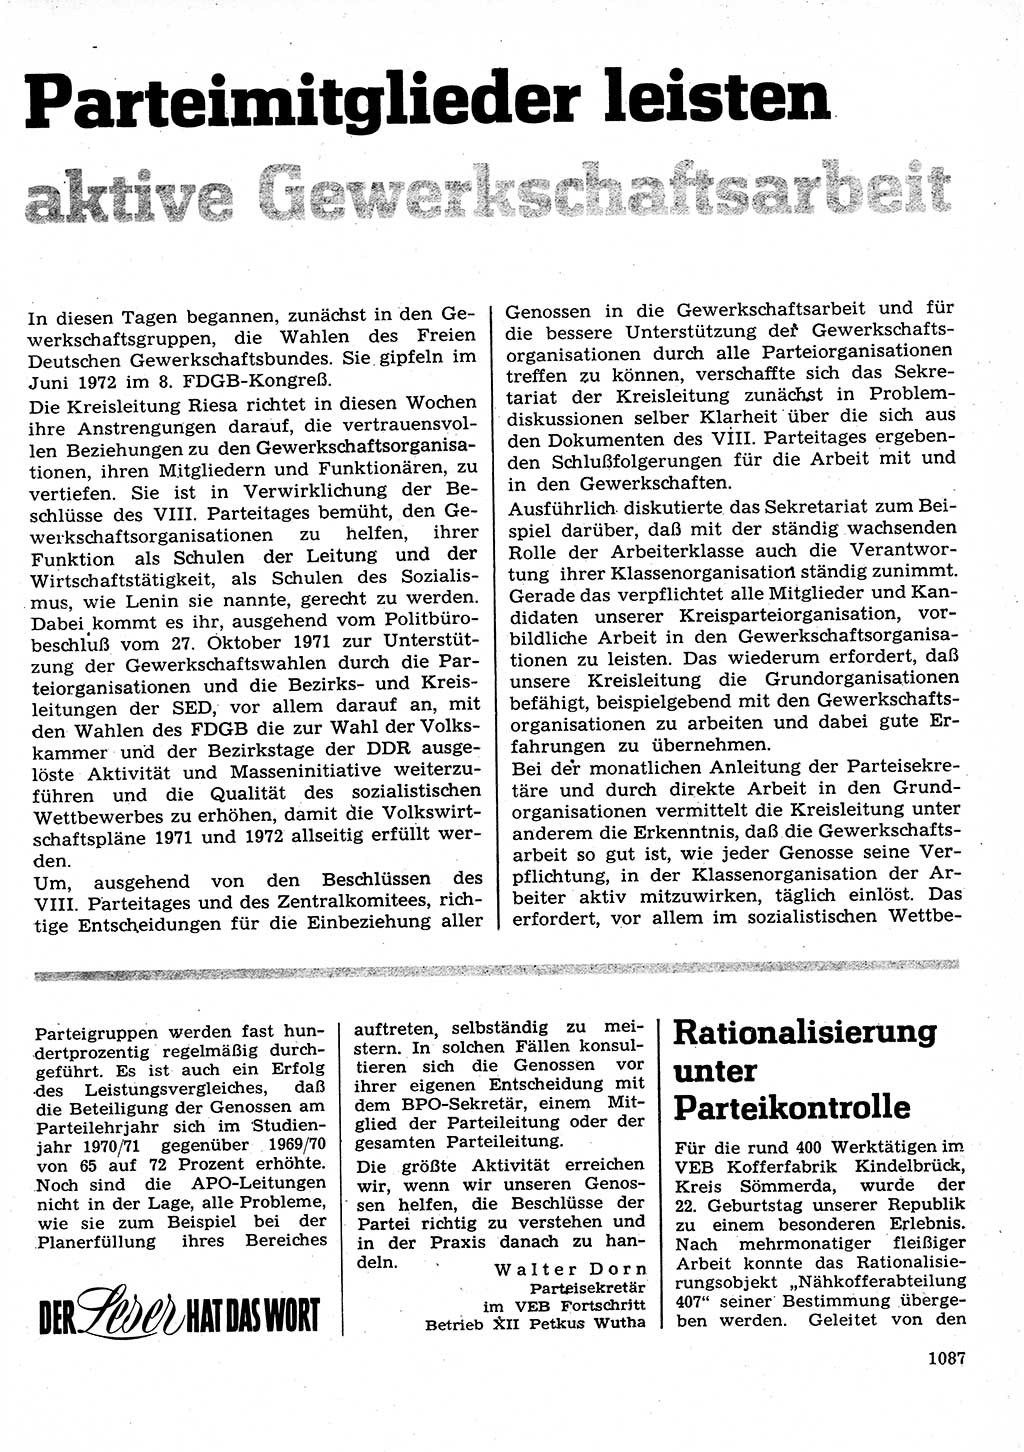 Neuer Weg (NW), Organ des Zentralkomitees (ZK) der SED (Sozialistische Einheitspartei Deutschlands) für Fragen des Parteilebens, 26. Jahrgang [Deutsche Demokratische Republik (DDR)] 1971, Seite 1087 (NW ZK SED DDR 1971, S. 1087)